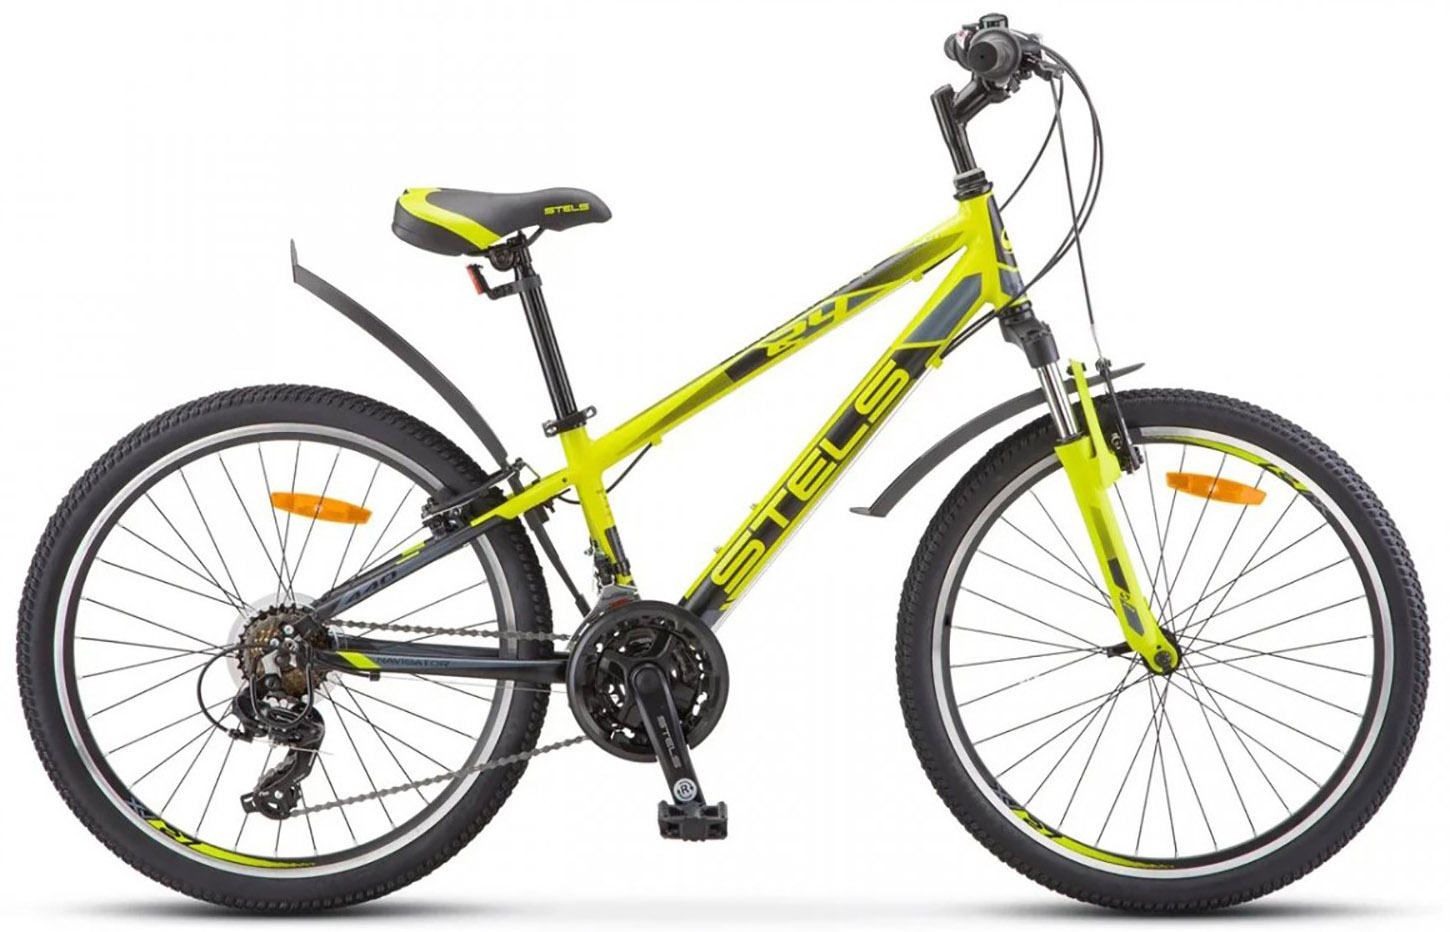  Отзывы о Подростковом велосипеде Stels Navigator 440 V K010 2020